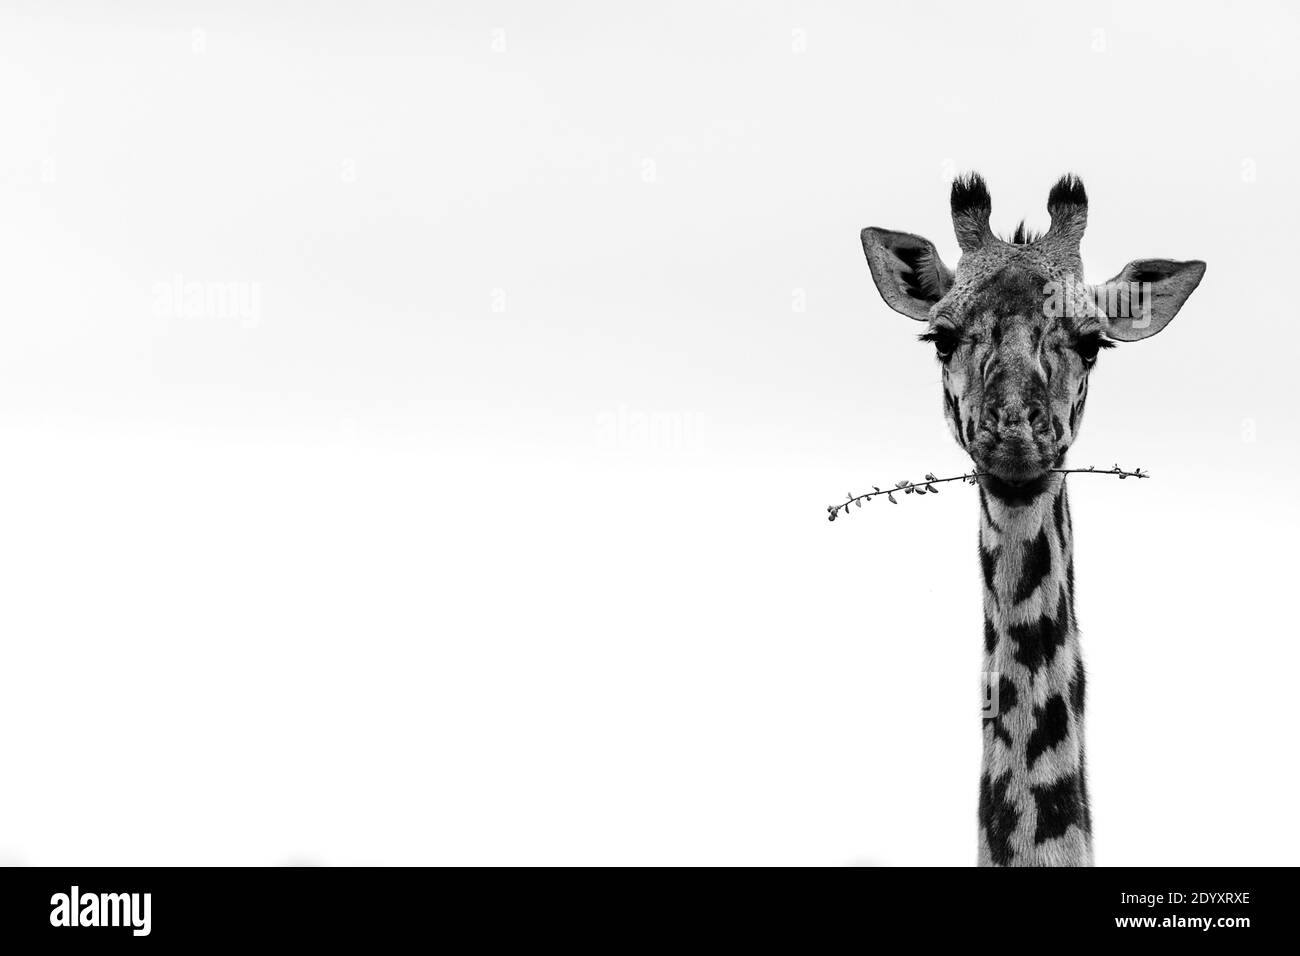 Black and white giraffe portrait, Nairobi National Park, Kenya Stock Photo